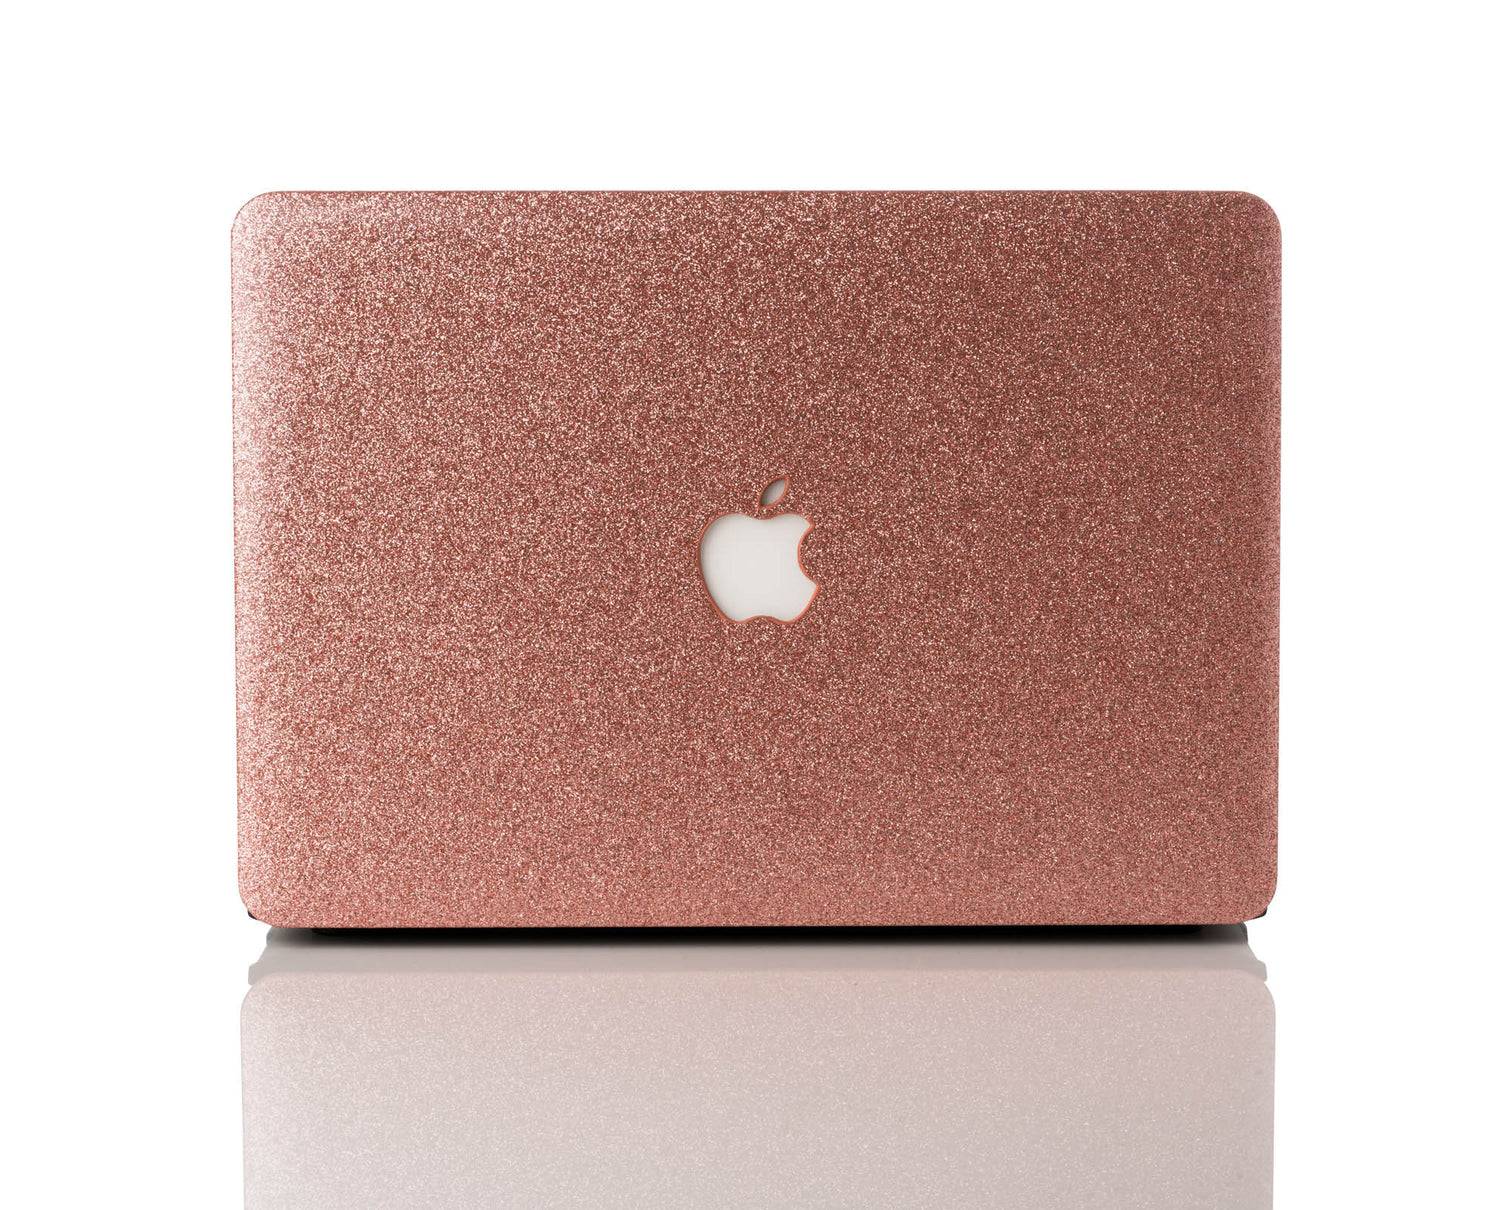 Macbook air  Pink macbook, Rose gold macbook, Glitter case